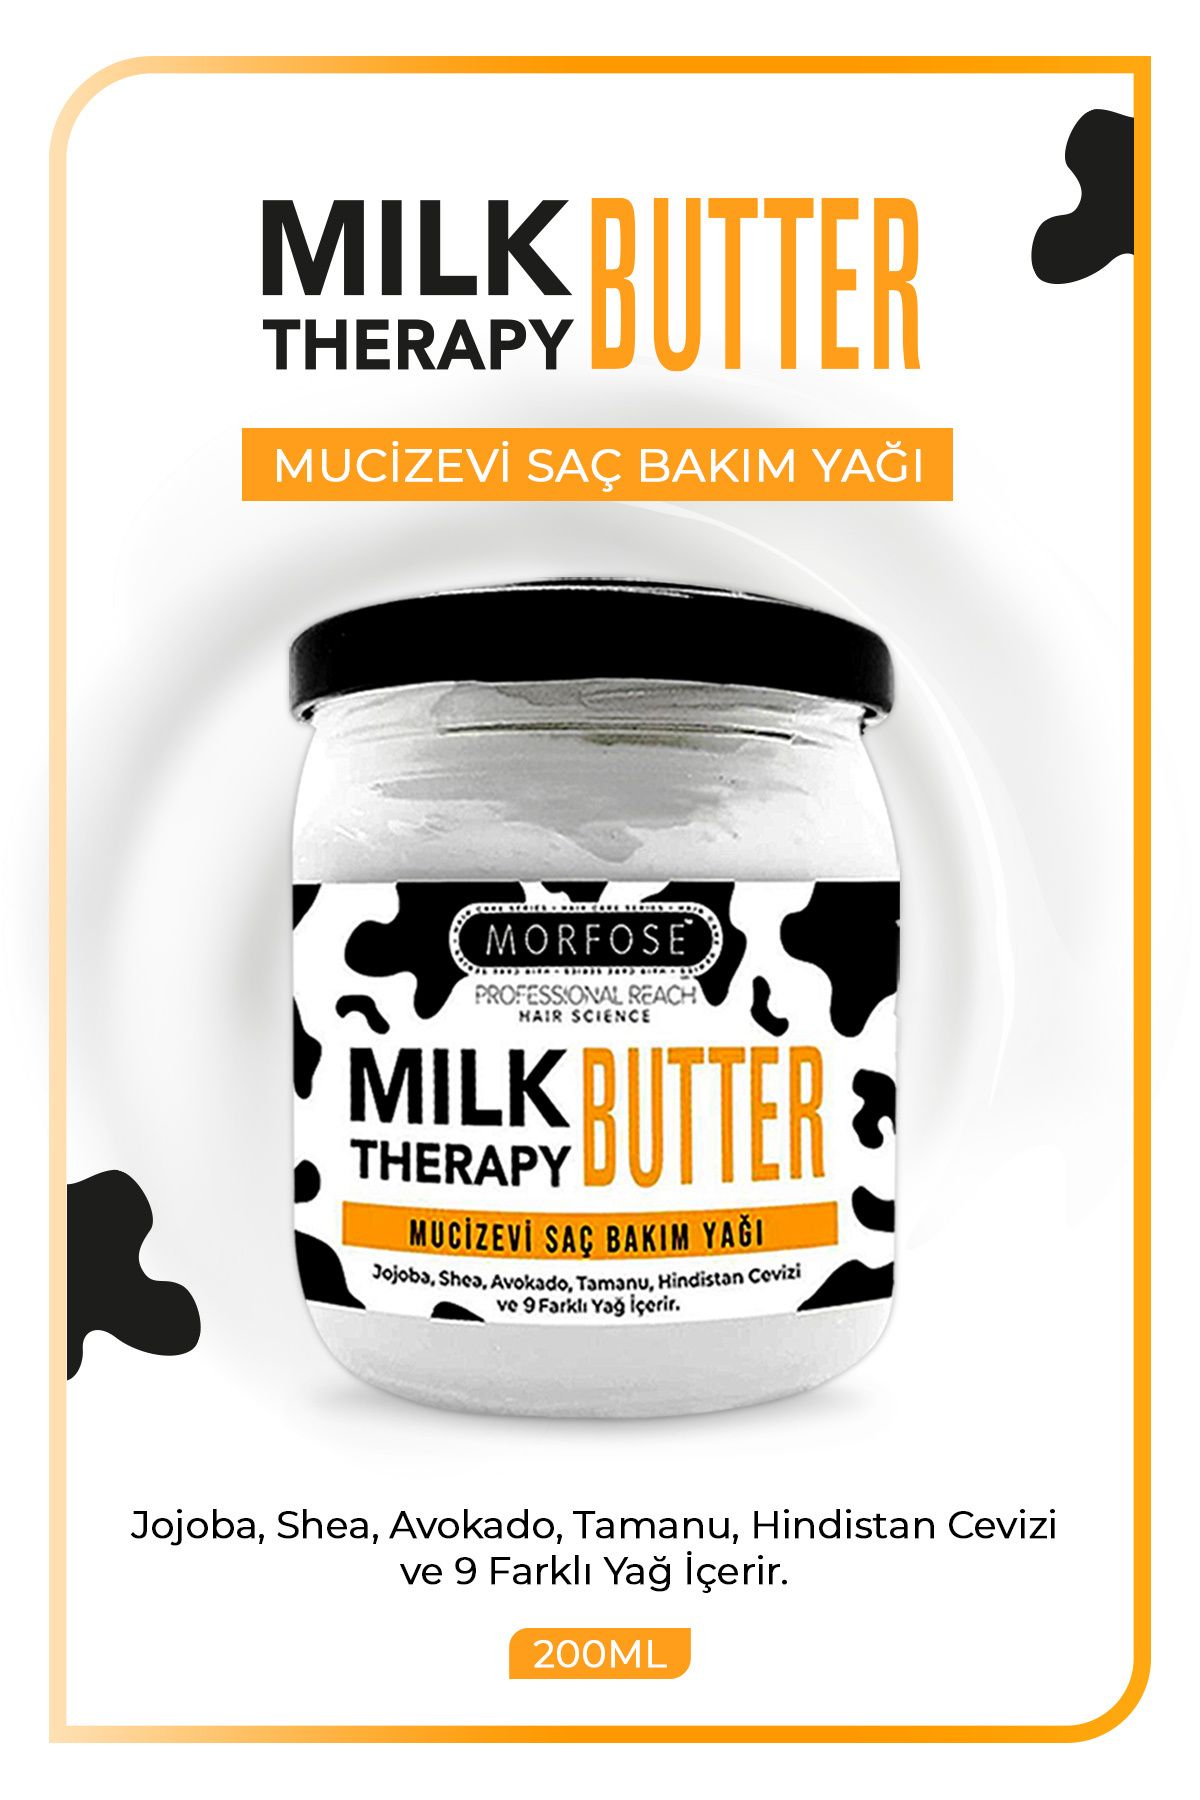 Morfose Milk Therapy Butter Oil Mucizevi Saç Bakım Kremi 200 ml -saç Dökülmesi Önleyici, Besleyici, Onarıcı